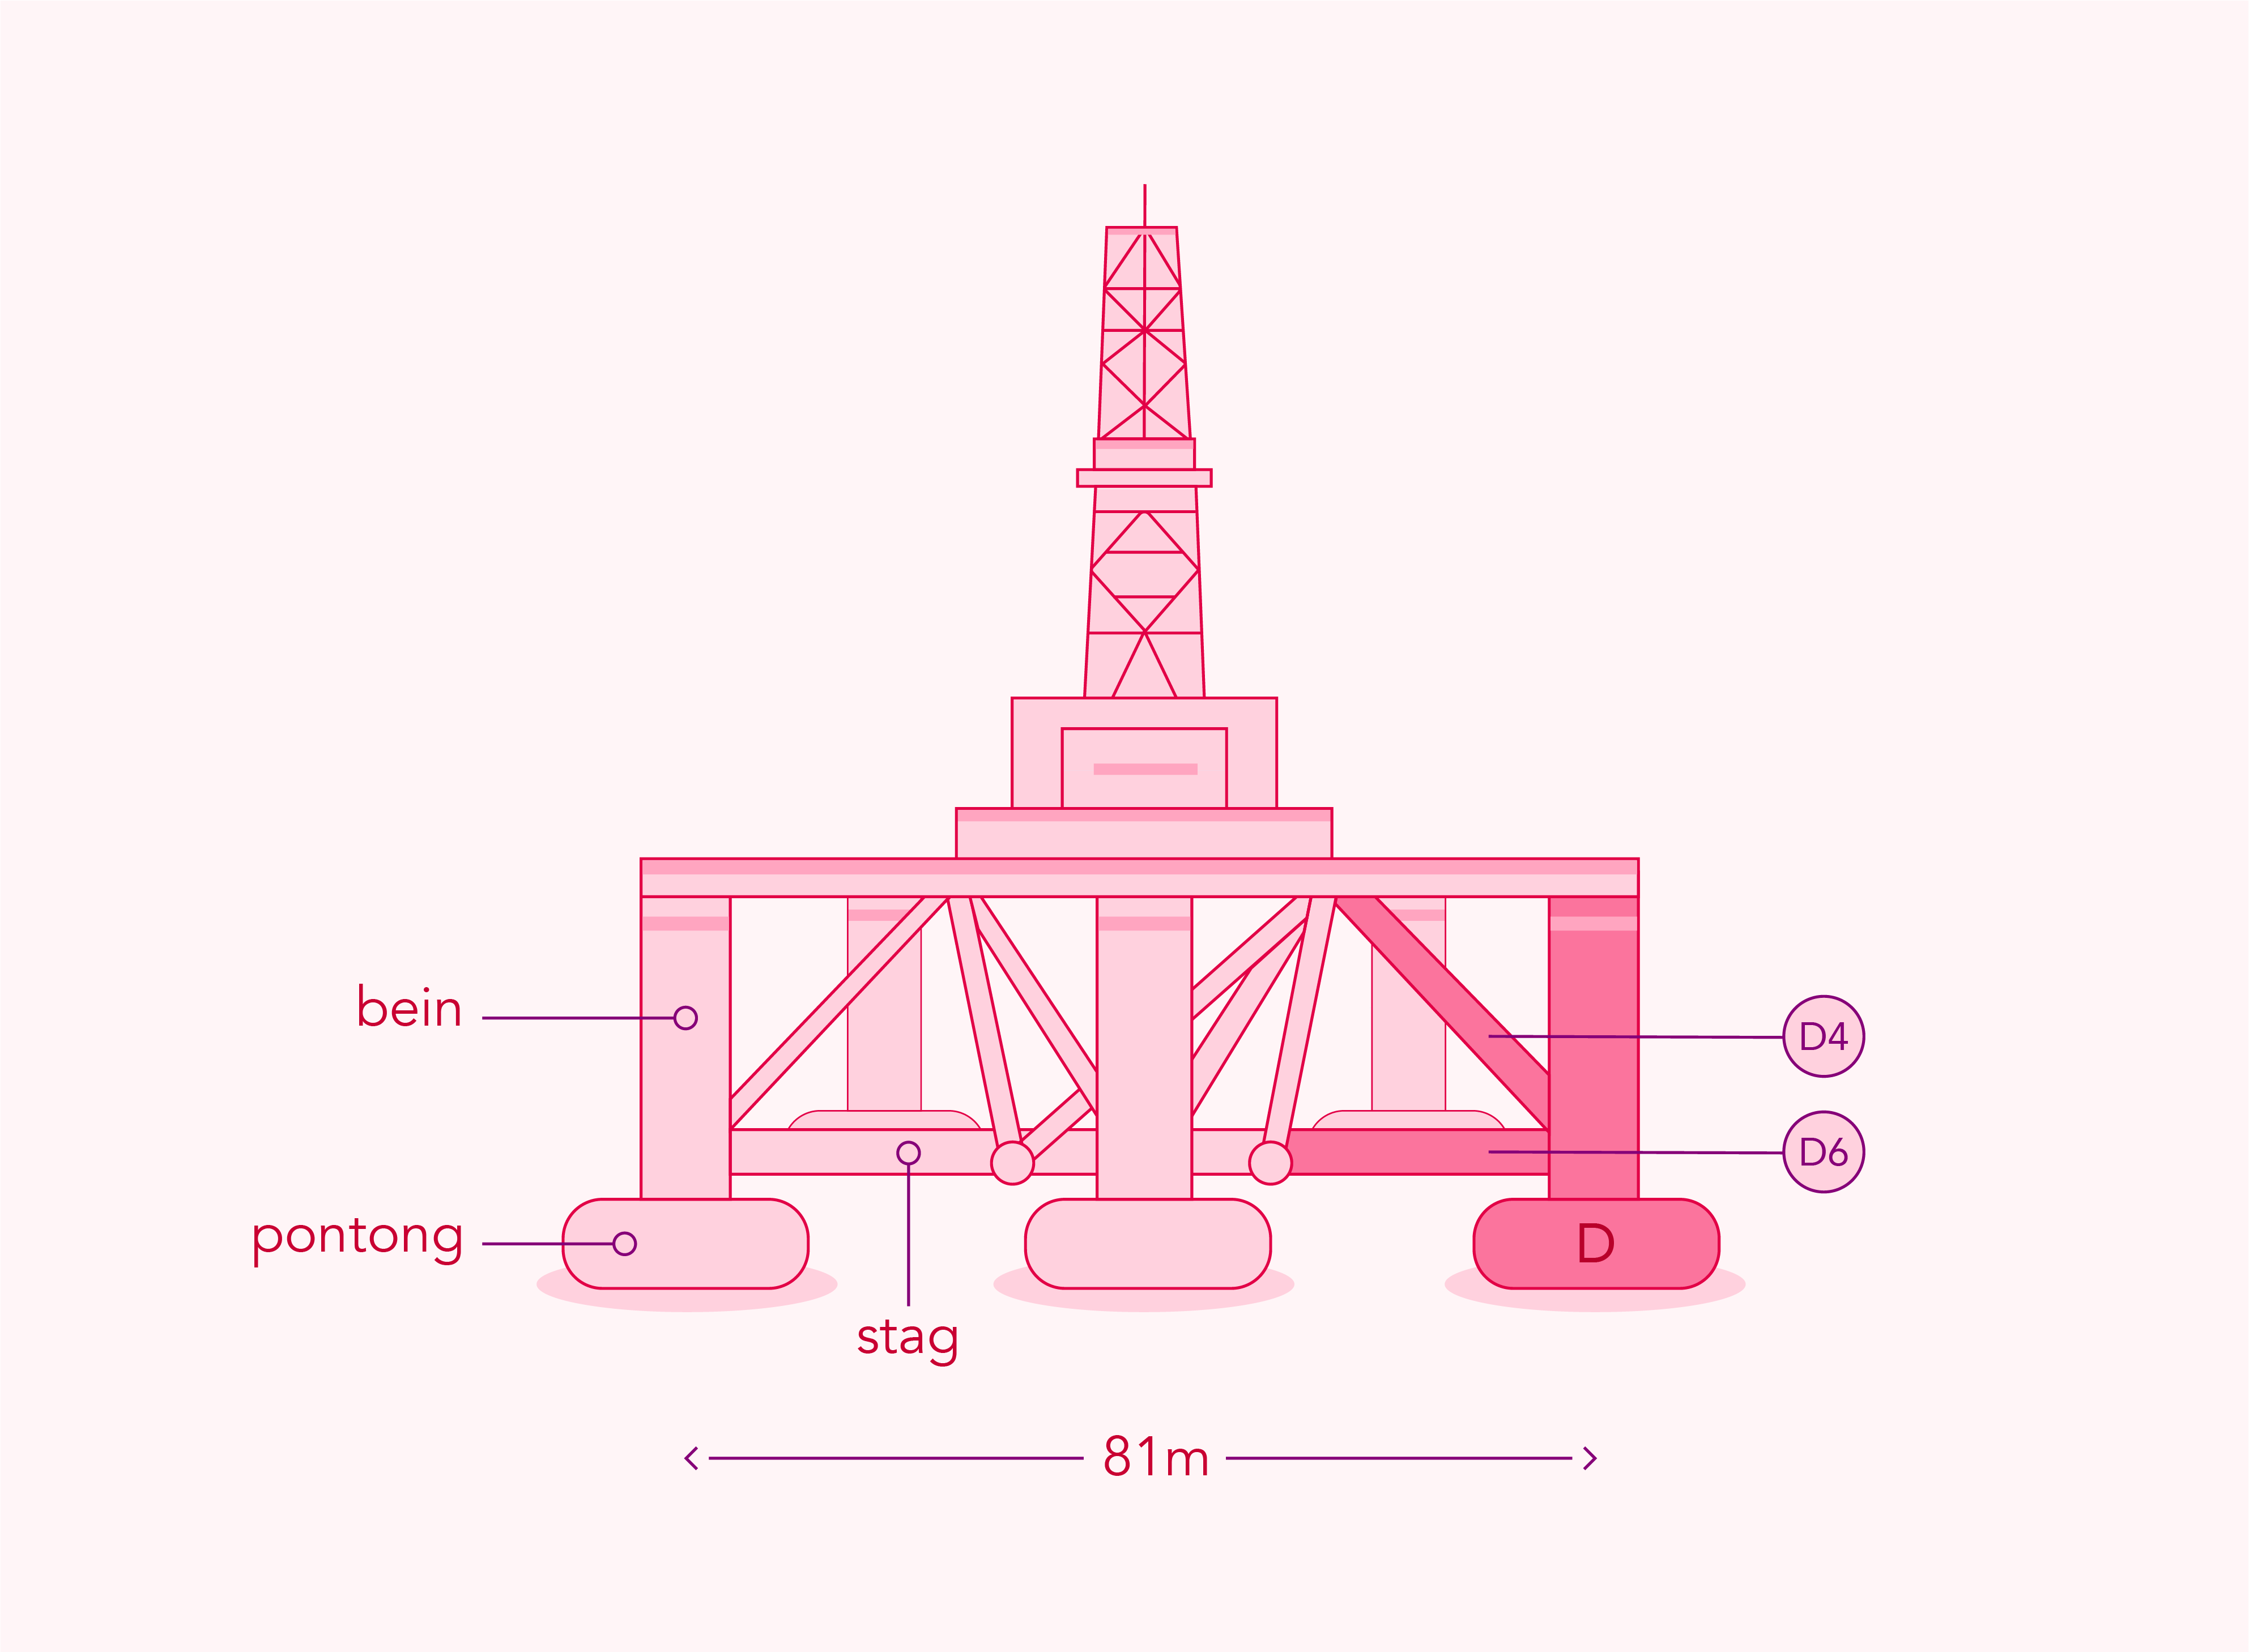 Forenklet framstilling av plattformen som viser hva som er plattformbein, hva som er stag, og plasseringen av stag D6 (horisontalt) og stag D4 (skråstag). Illustrasjon.